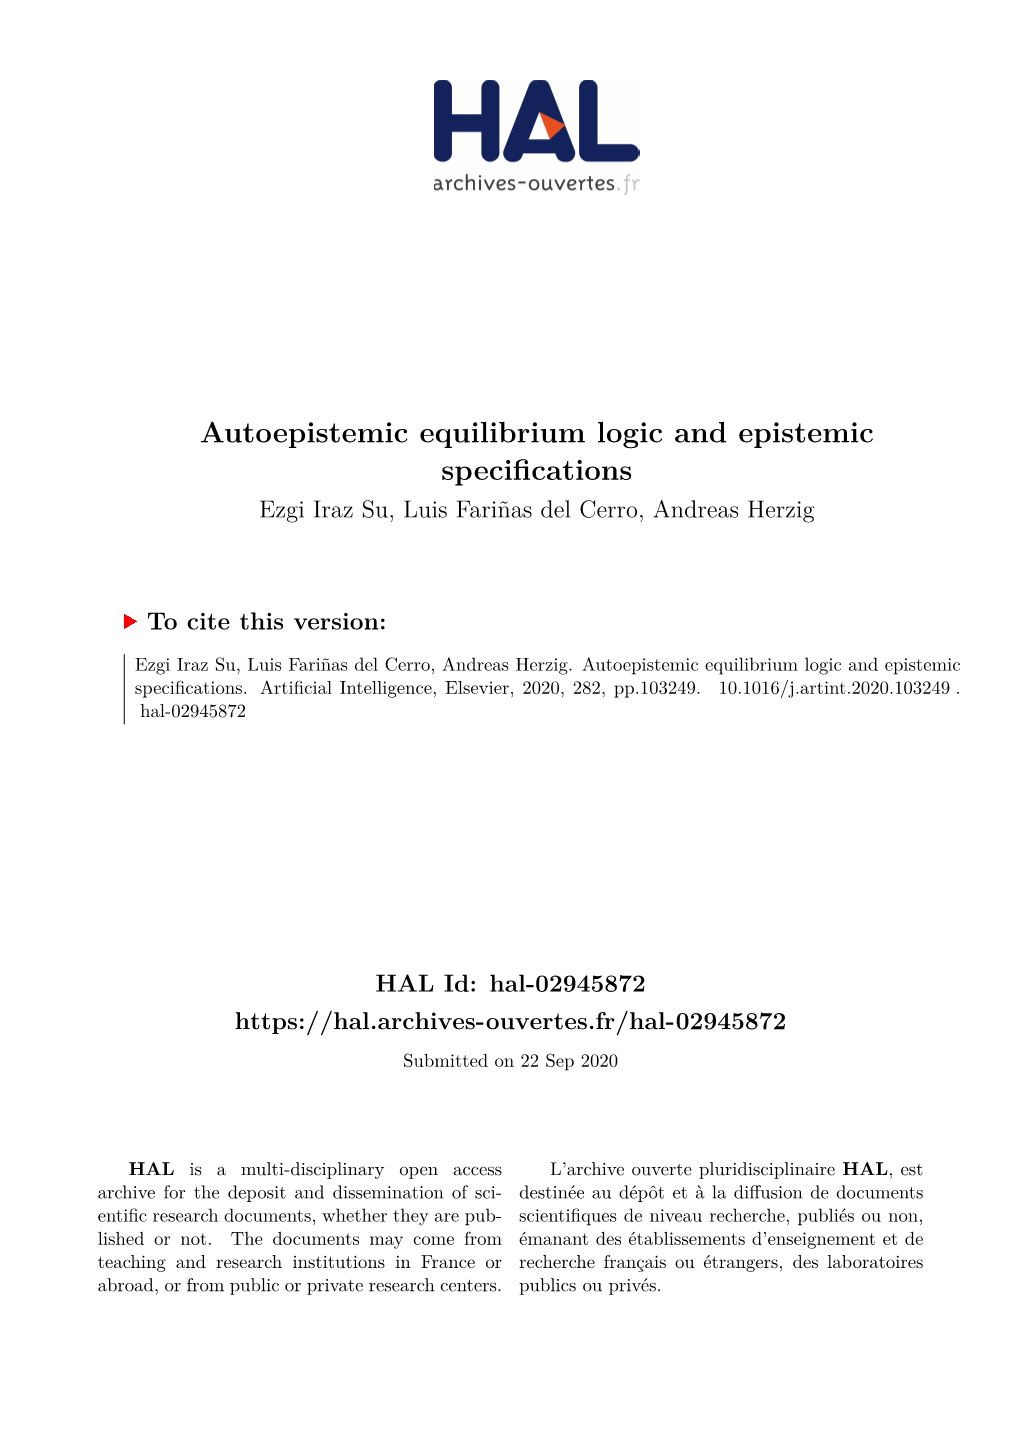 Autoepistemic Equilibrium Logic and Epistemic Specifications Ezgi Iraz Su, Luis Fariñas Del Cerro, Andreas Herzig